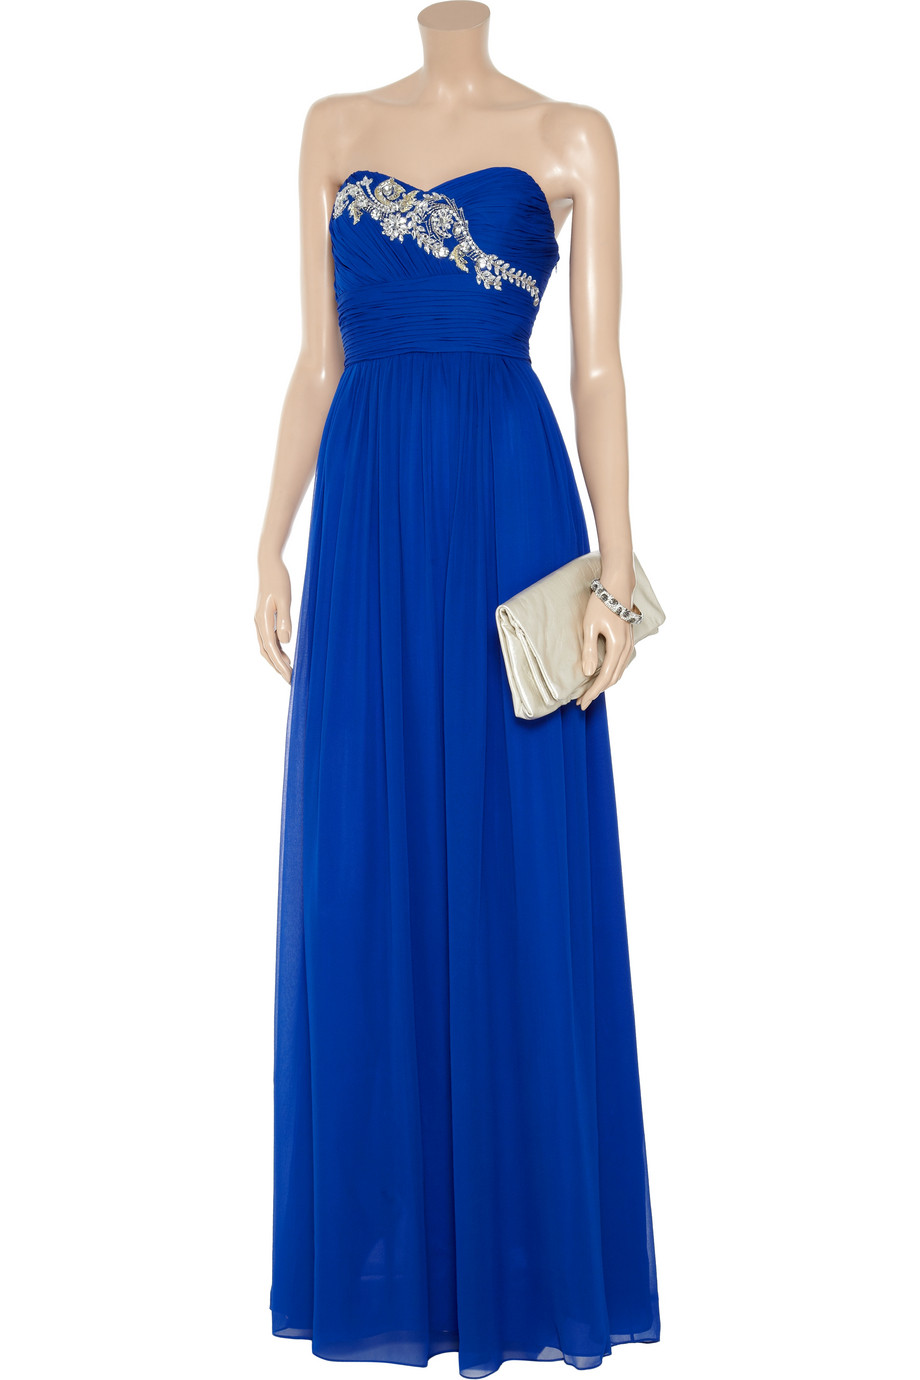 Marchesa notte Embellished Silkchiffon Gown in Blue - Lyst